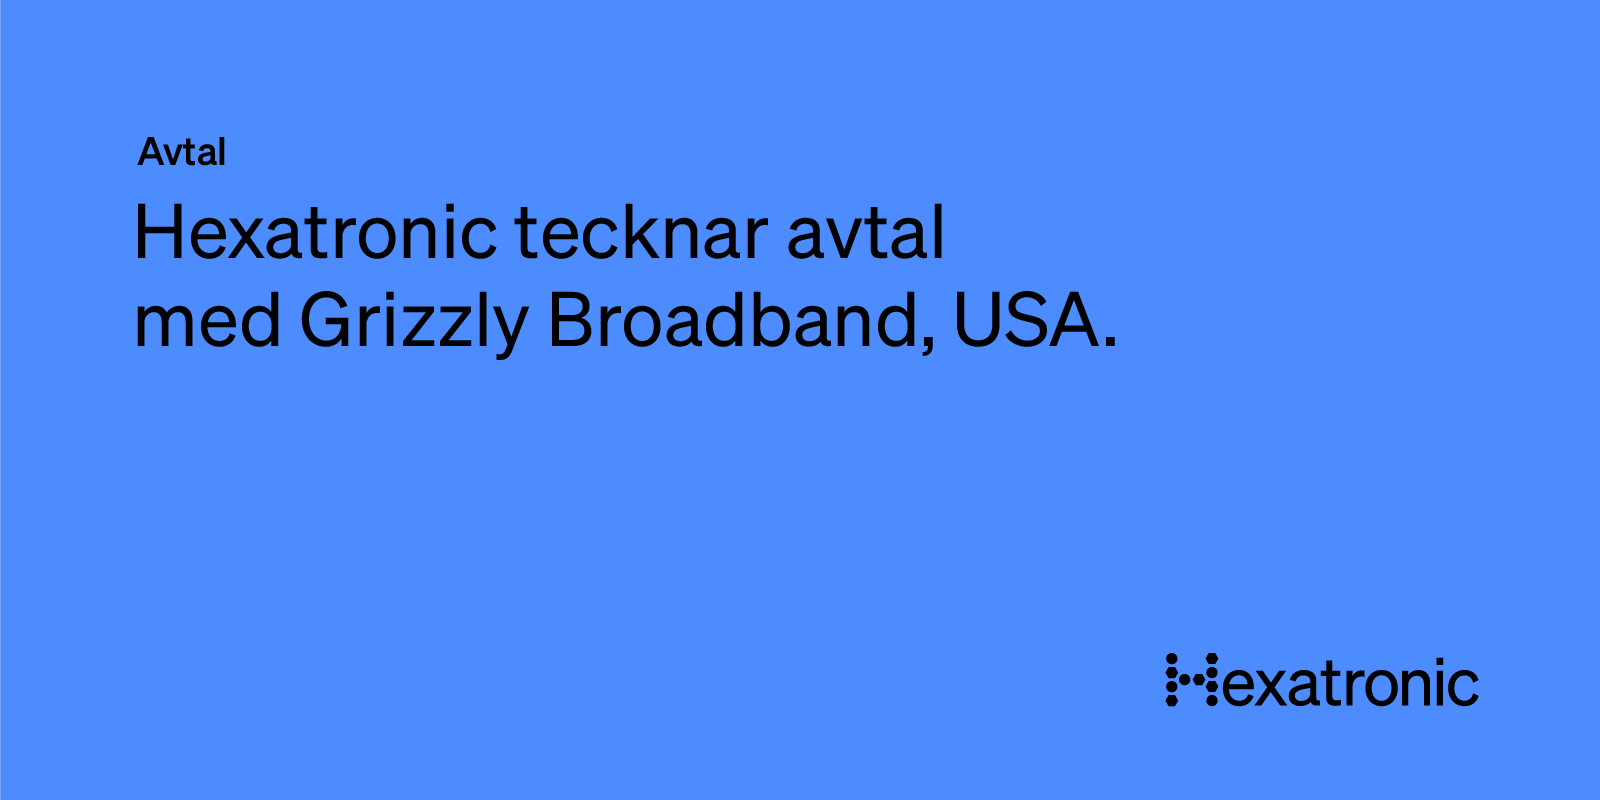 Hexatronic tecknar avtal med Grizzly Broadband i USA till ett värde av över 15 MUSD.